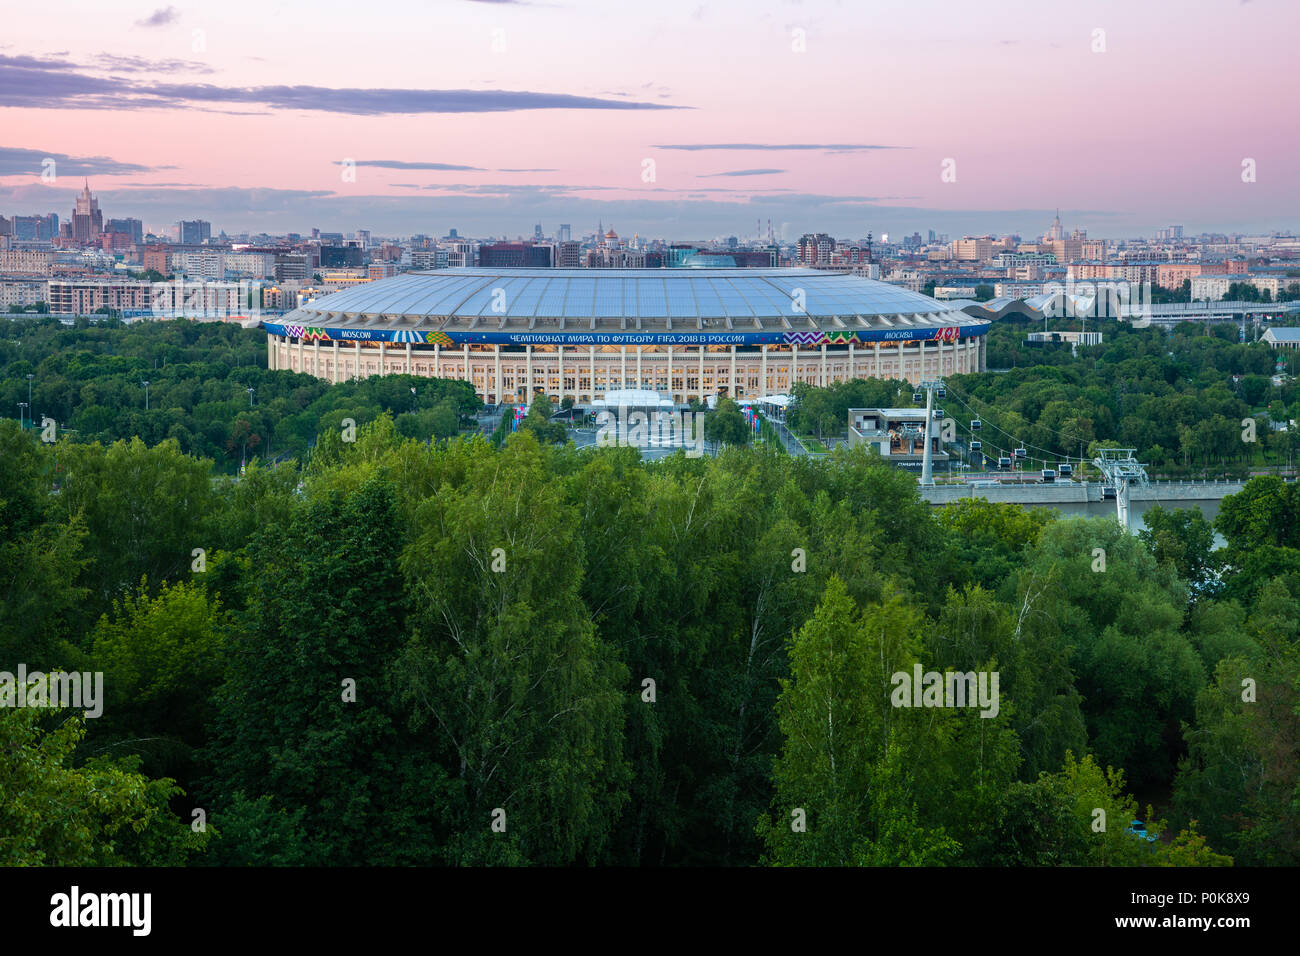 Mosca, Russia - Giugno 06, 2018: il punto di vista del Luzhniki Stadium da Sparrow Hills Observation Deck, il principale stadium di 2018 FIFA World Cup, 06 giugno 201 Foto Stock